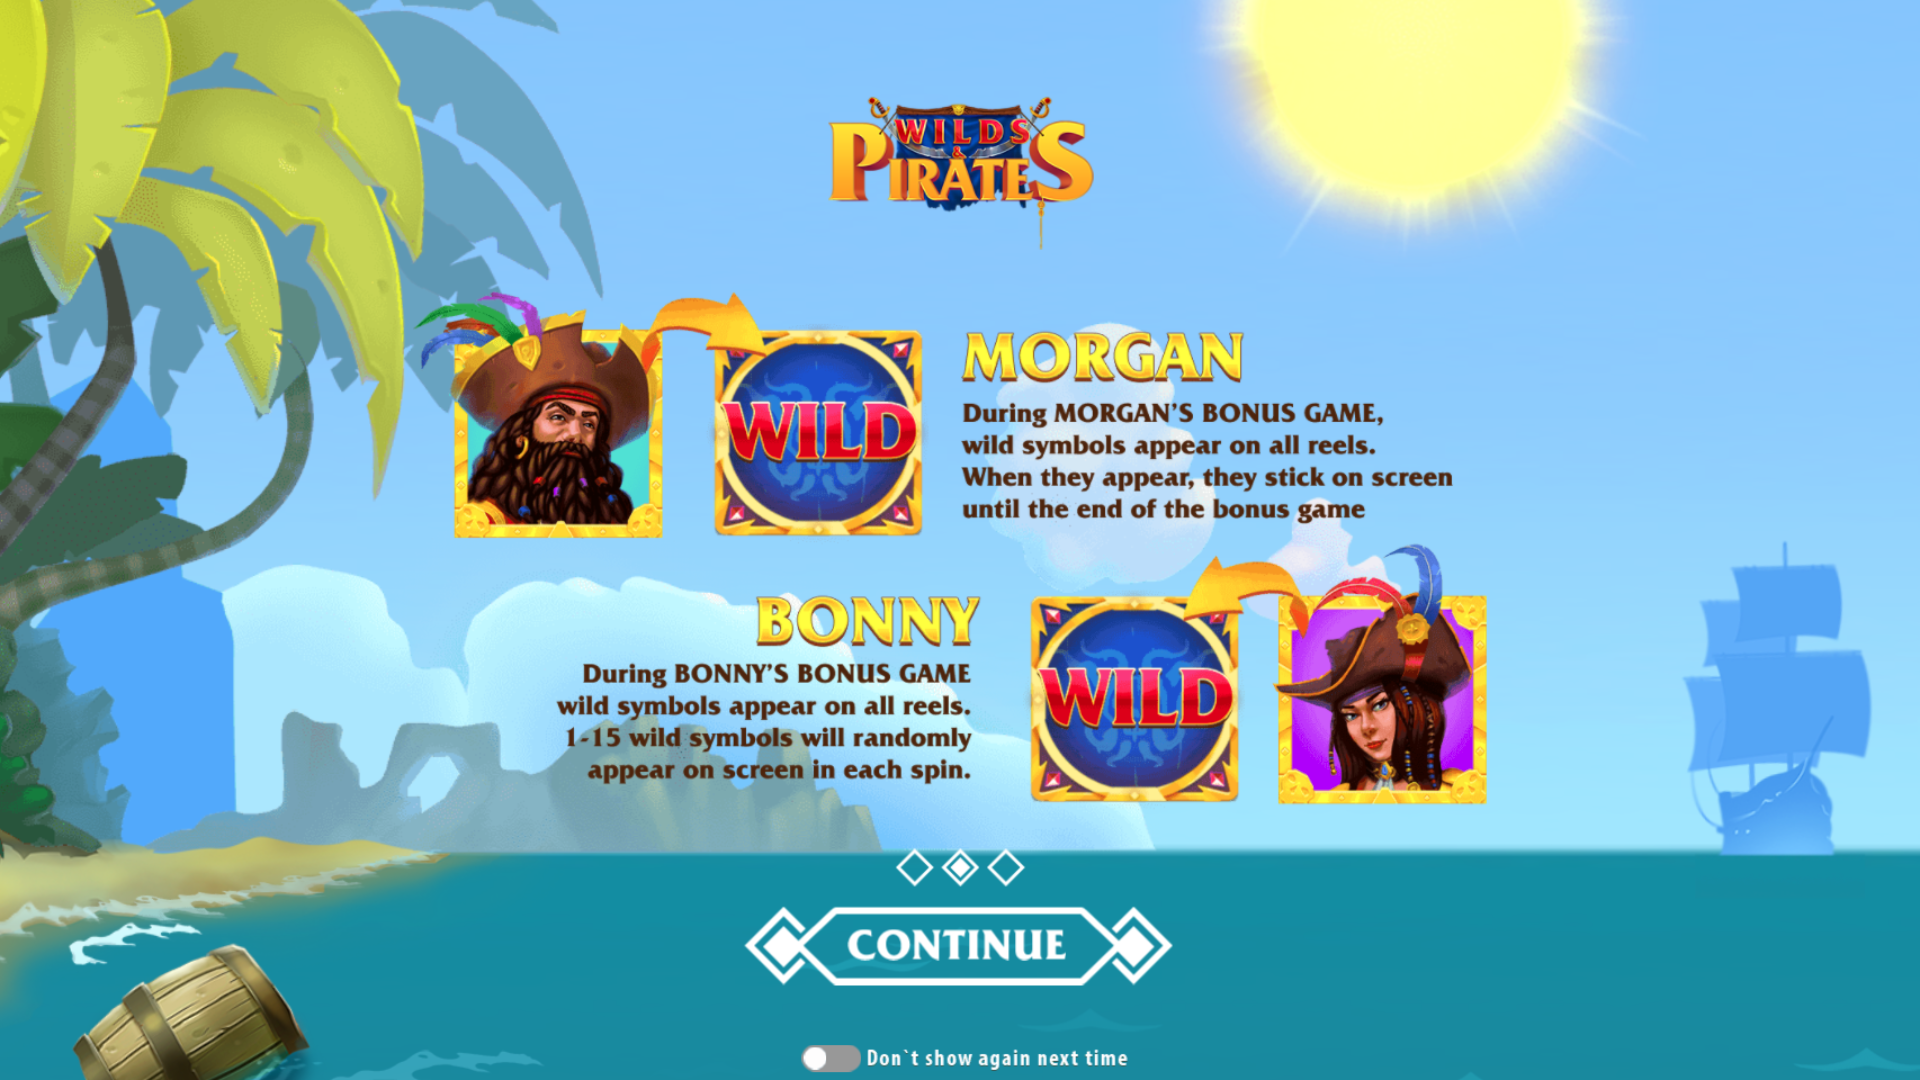 Wilds and Pirates Bonus Games